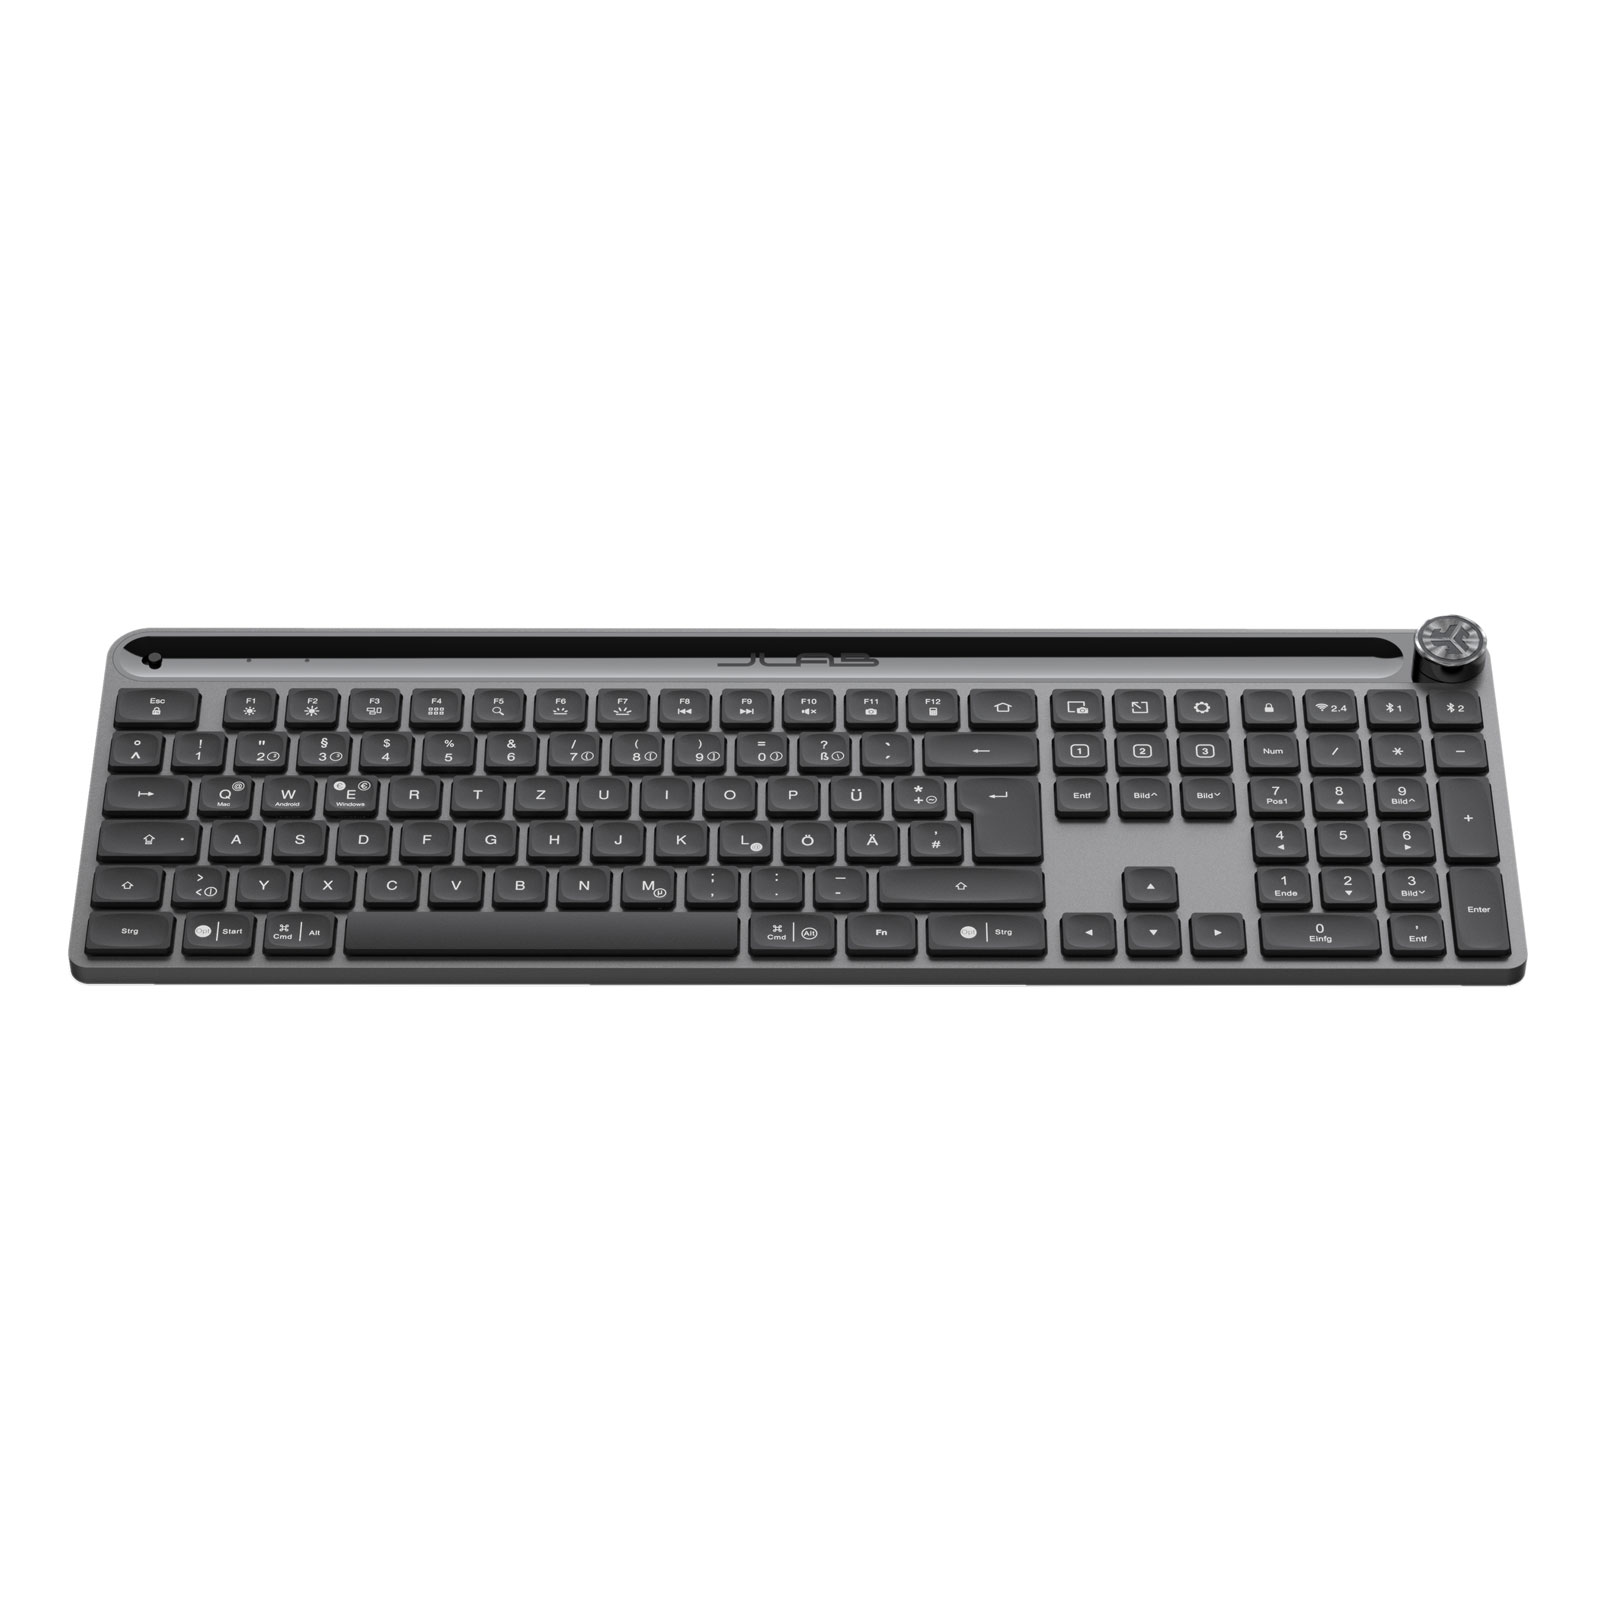 JLab Epic Keyboard Wireless - Tastatur Bluetooth 2,4 GHZ USB Dongle